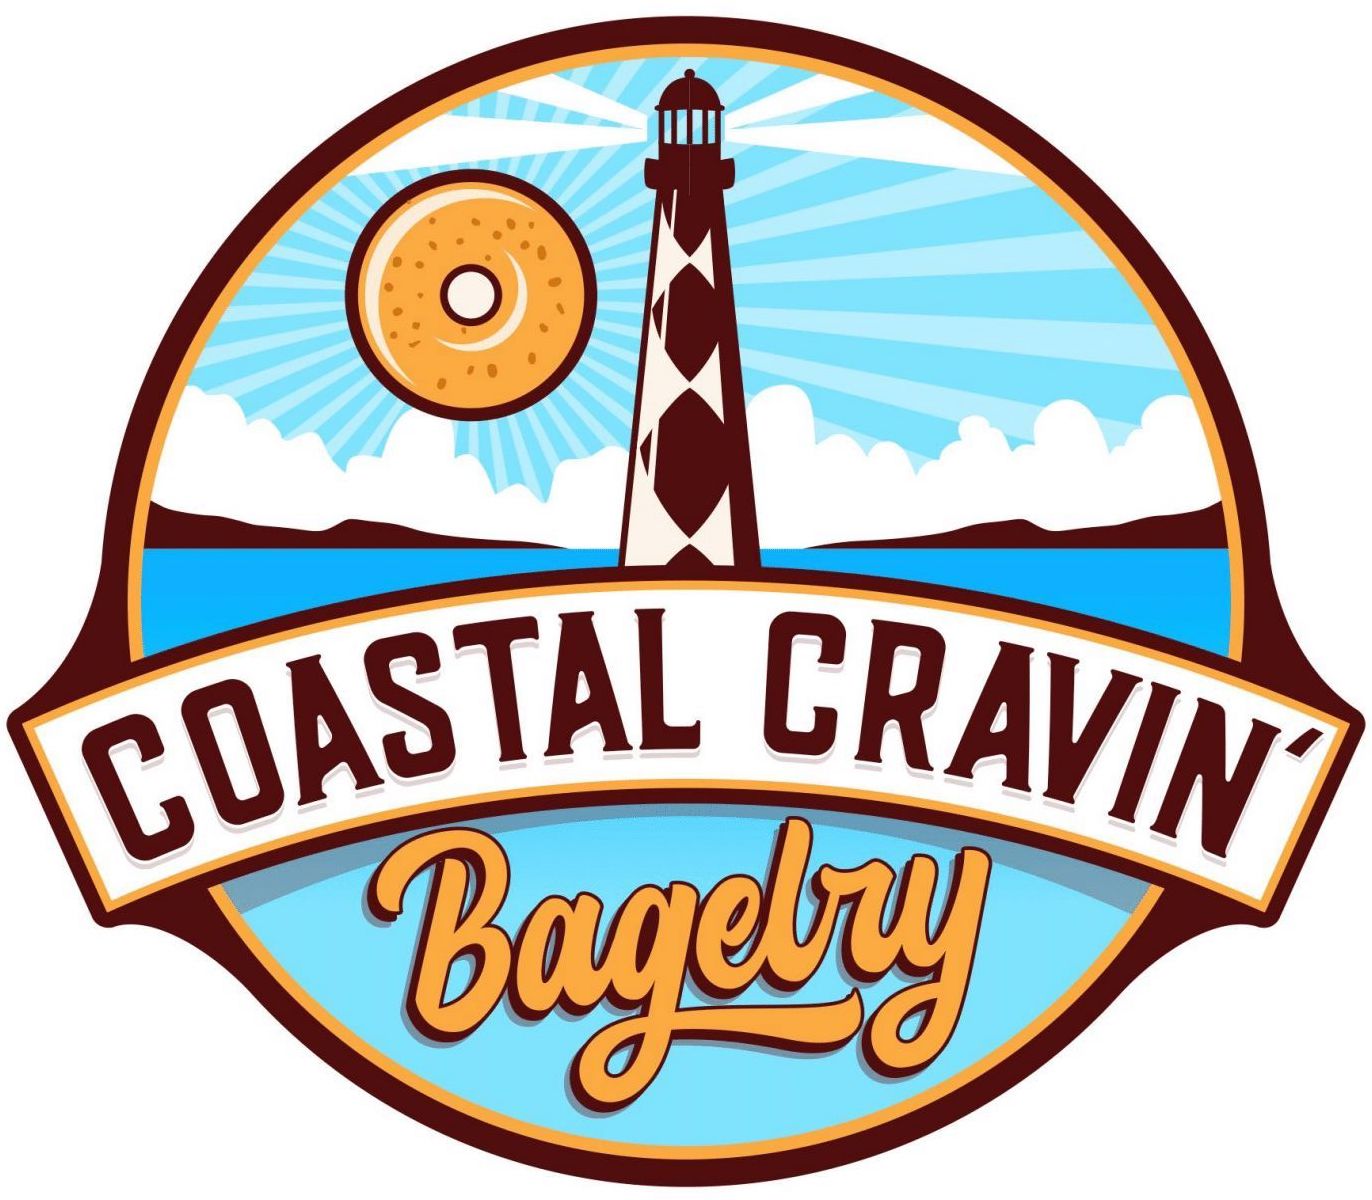 Coastal Cravin Bagelry